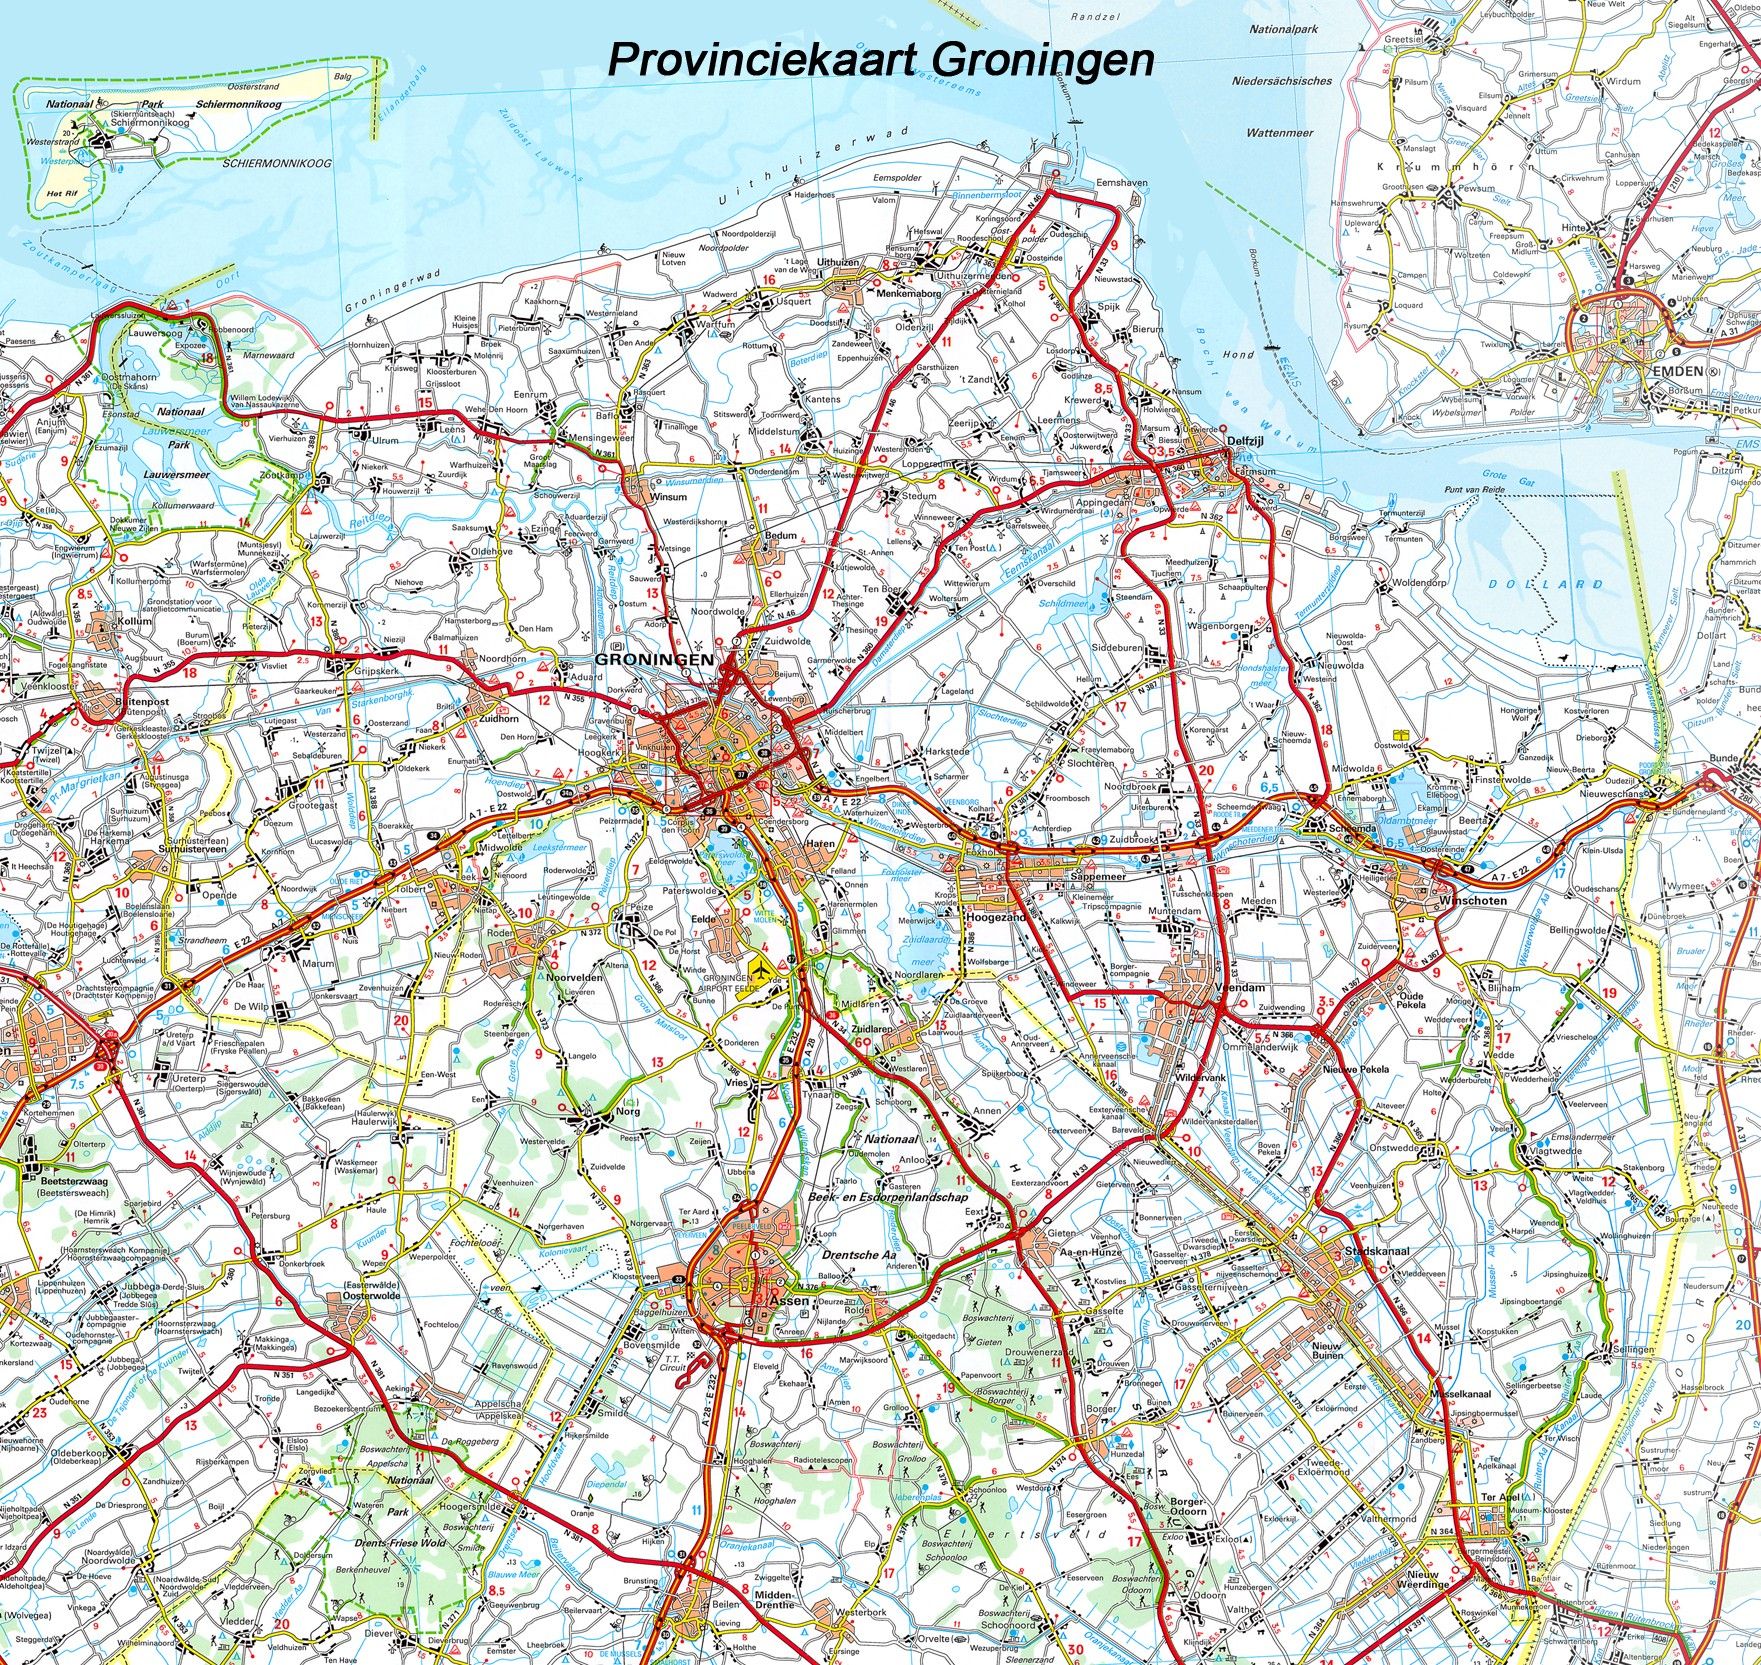 Koop Provincie Kaart Groningen 1:100.000 Voordelig Online Bij Commee